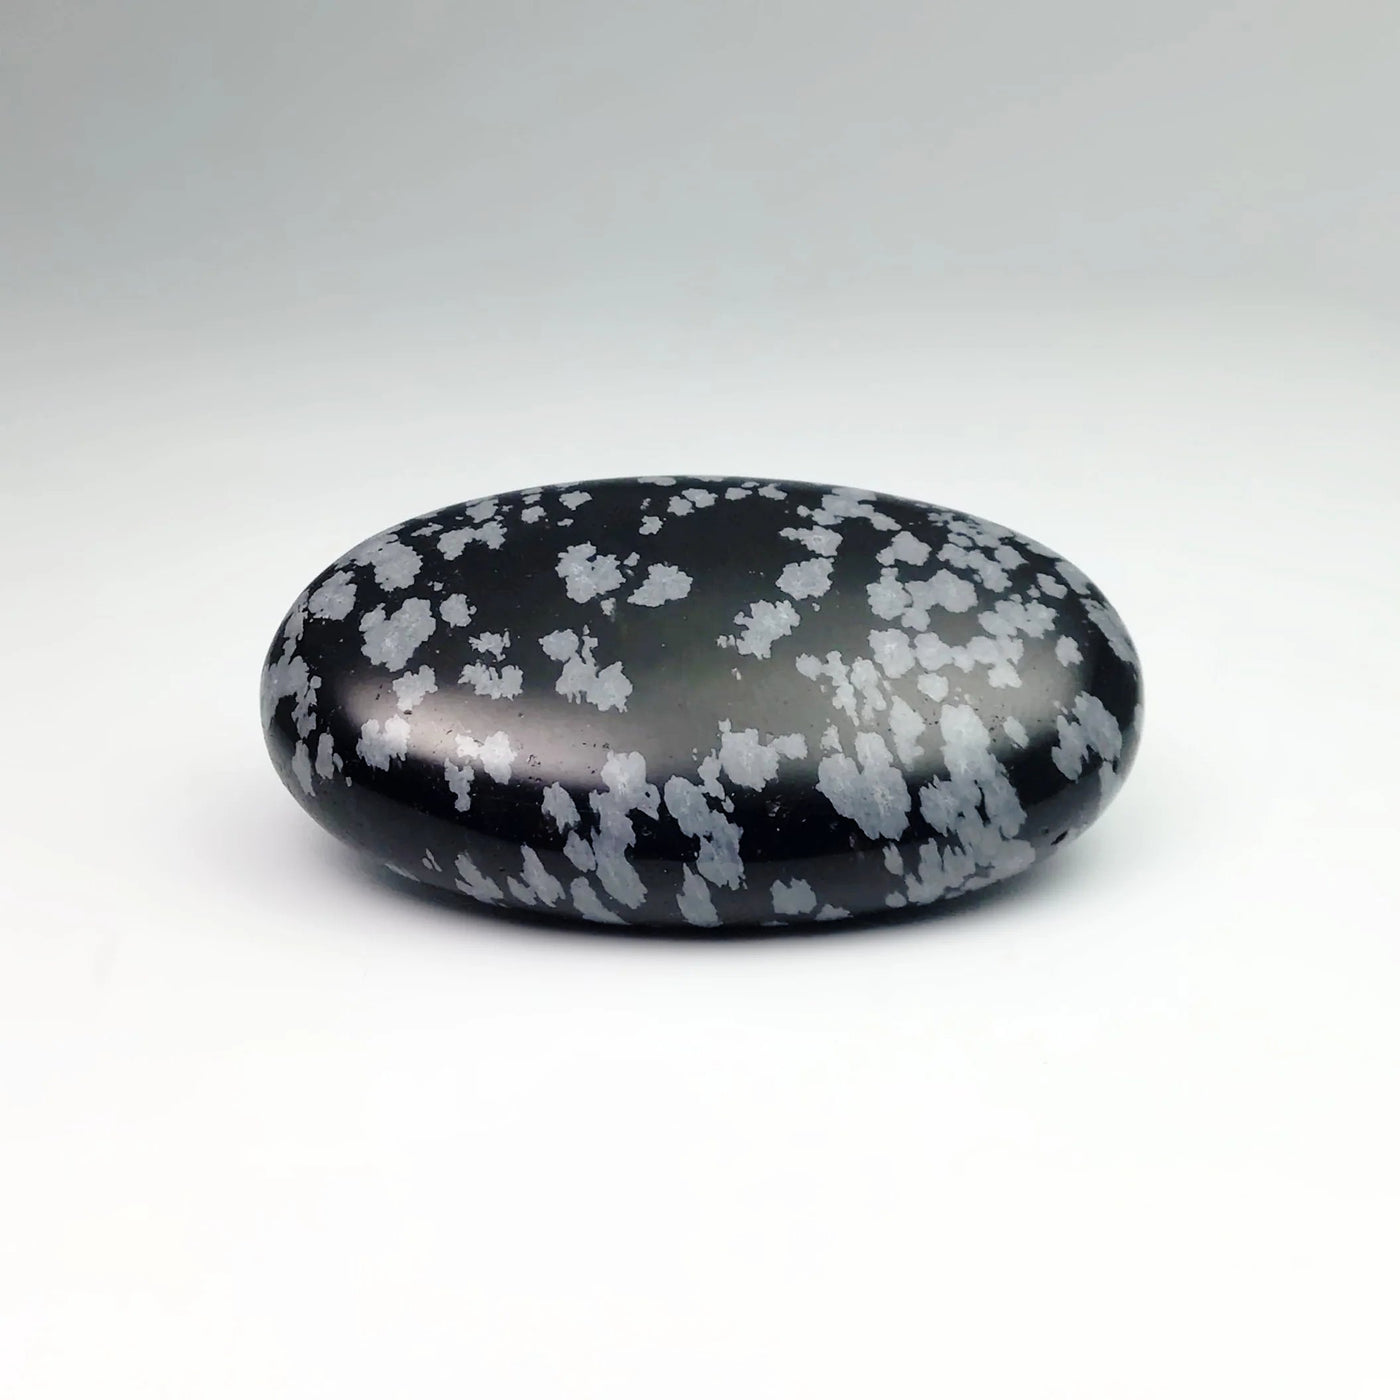 Snowflake Obsidian Gratitude Stone